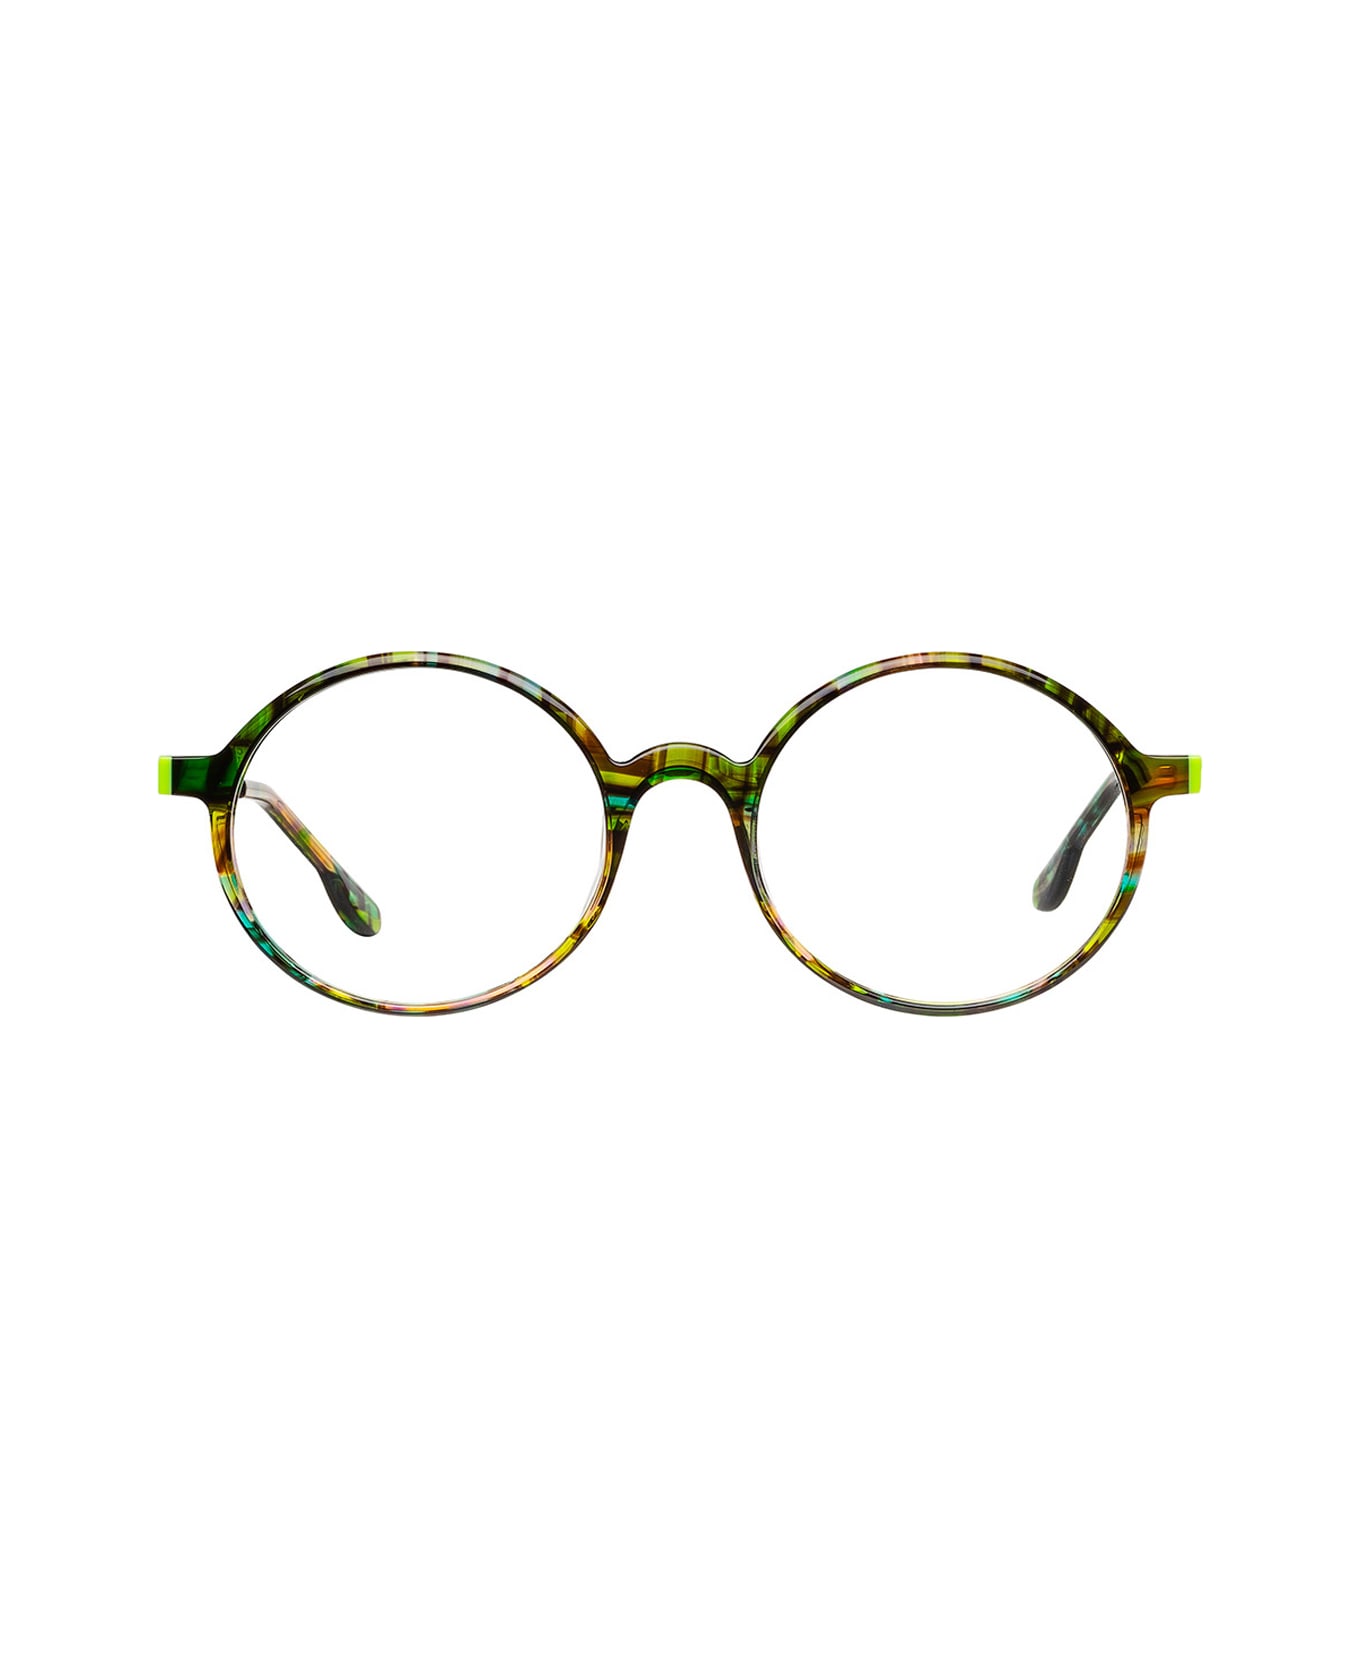 Matttew Noordzee 1133 Glasses - Verde アイウェア